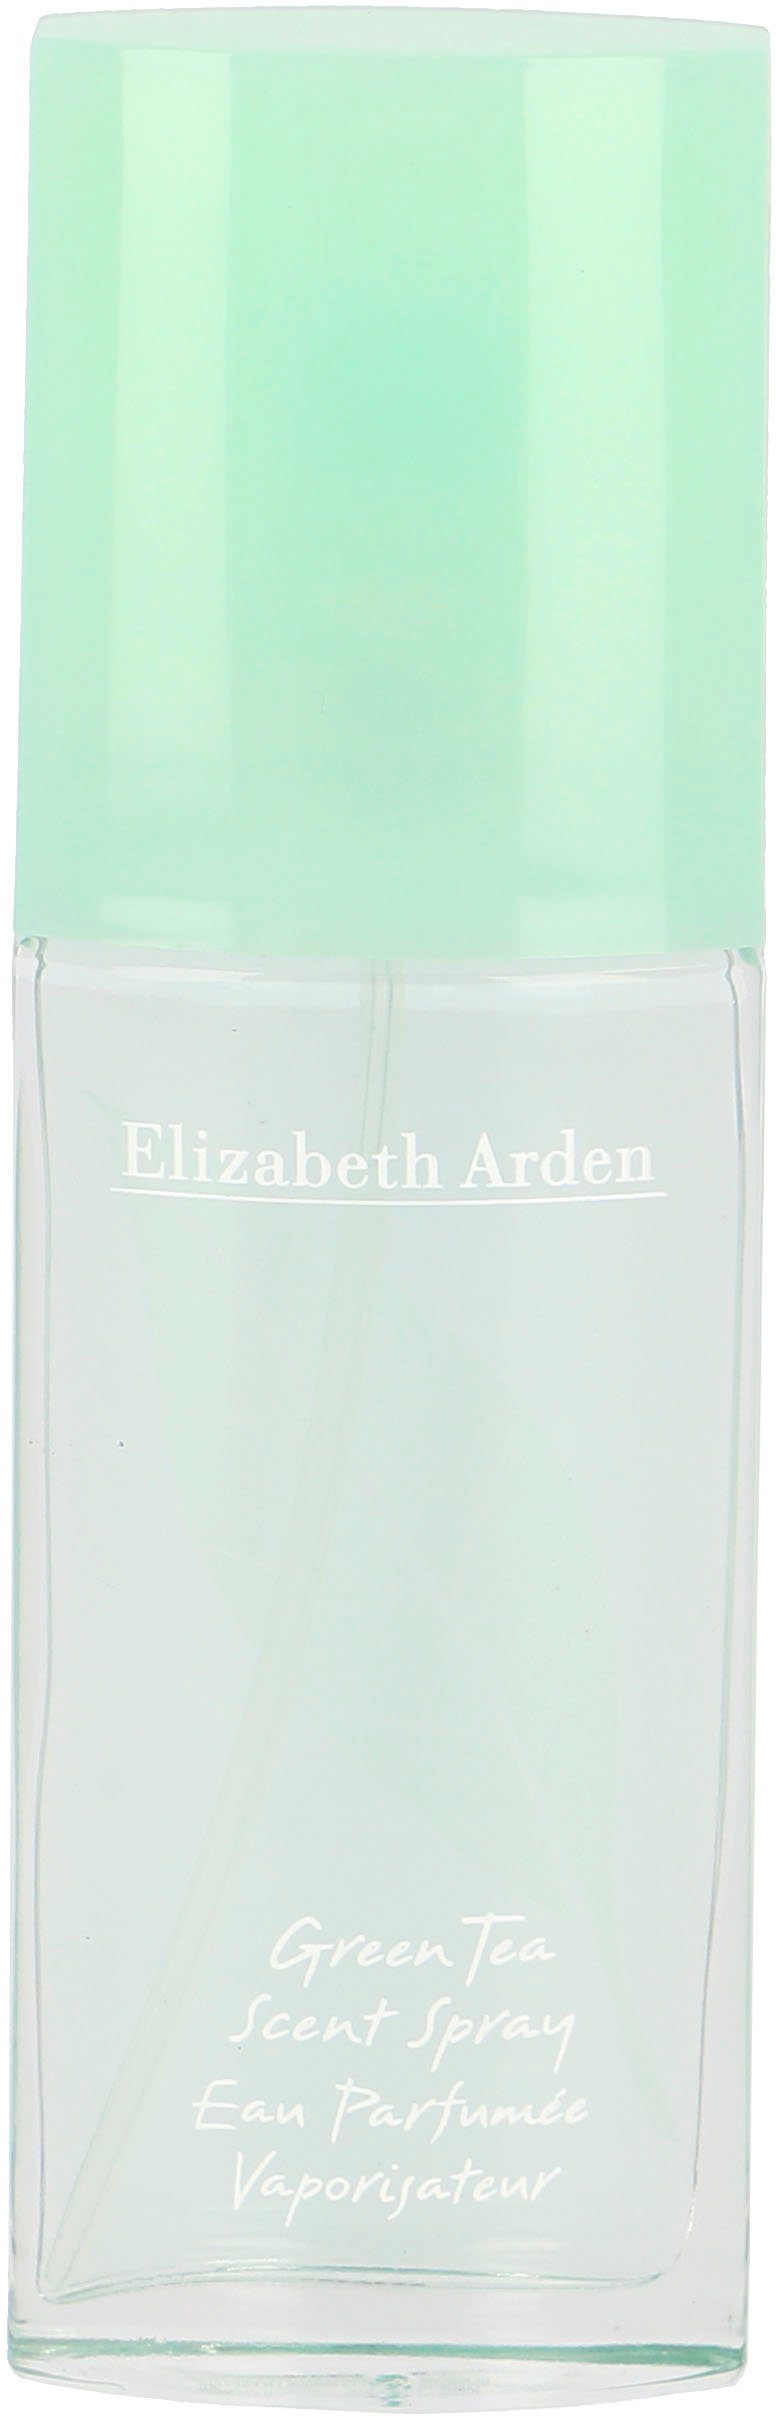 Elizabeth Arden Eau de Toilette Green Tea | Eau de Toilette